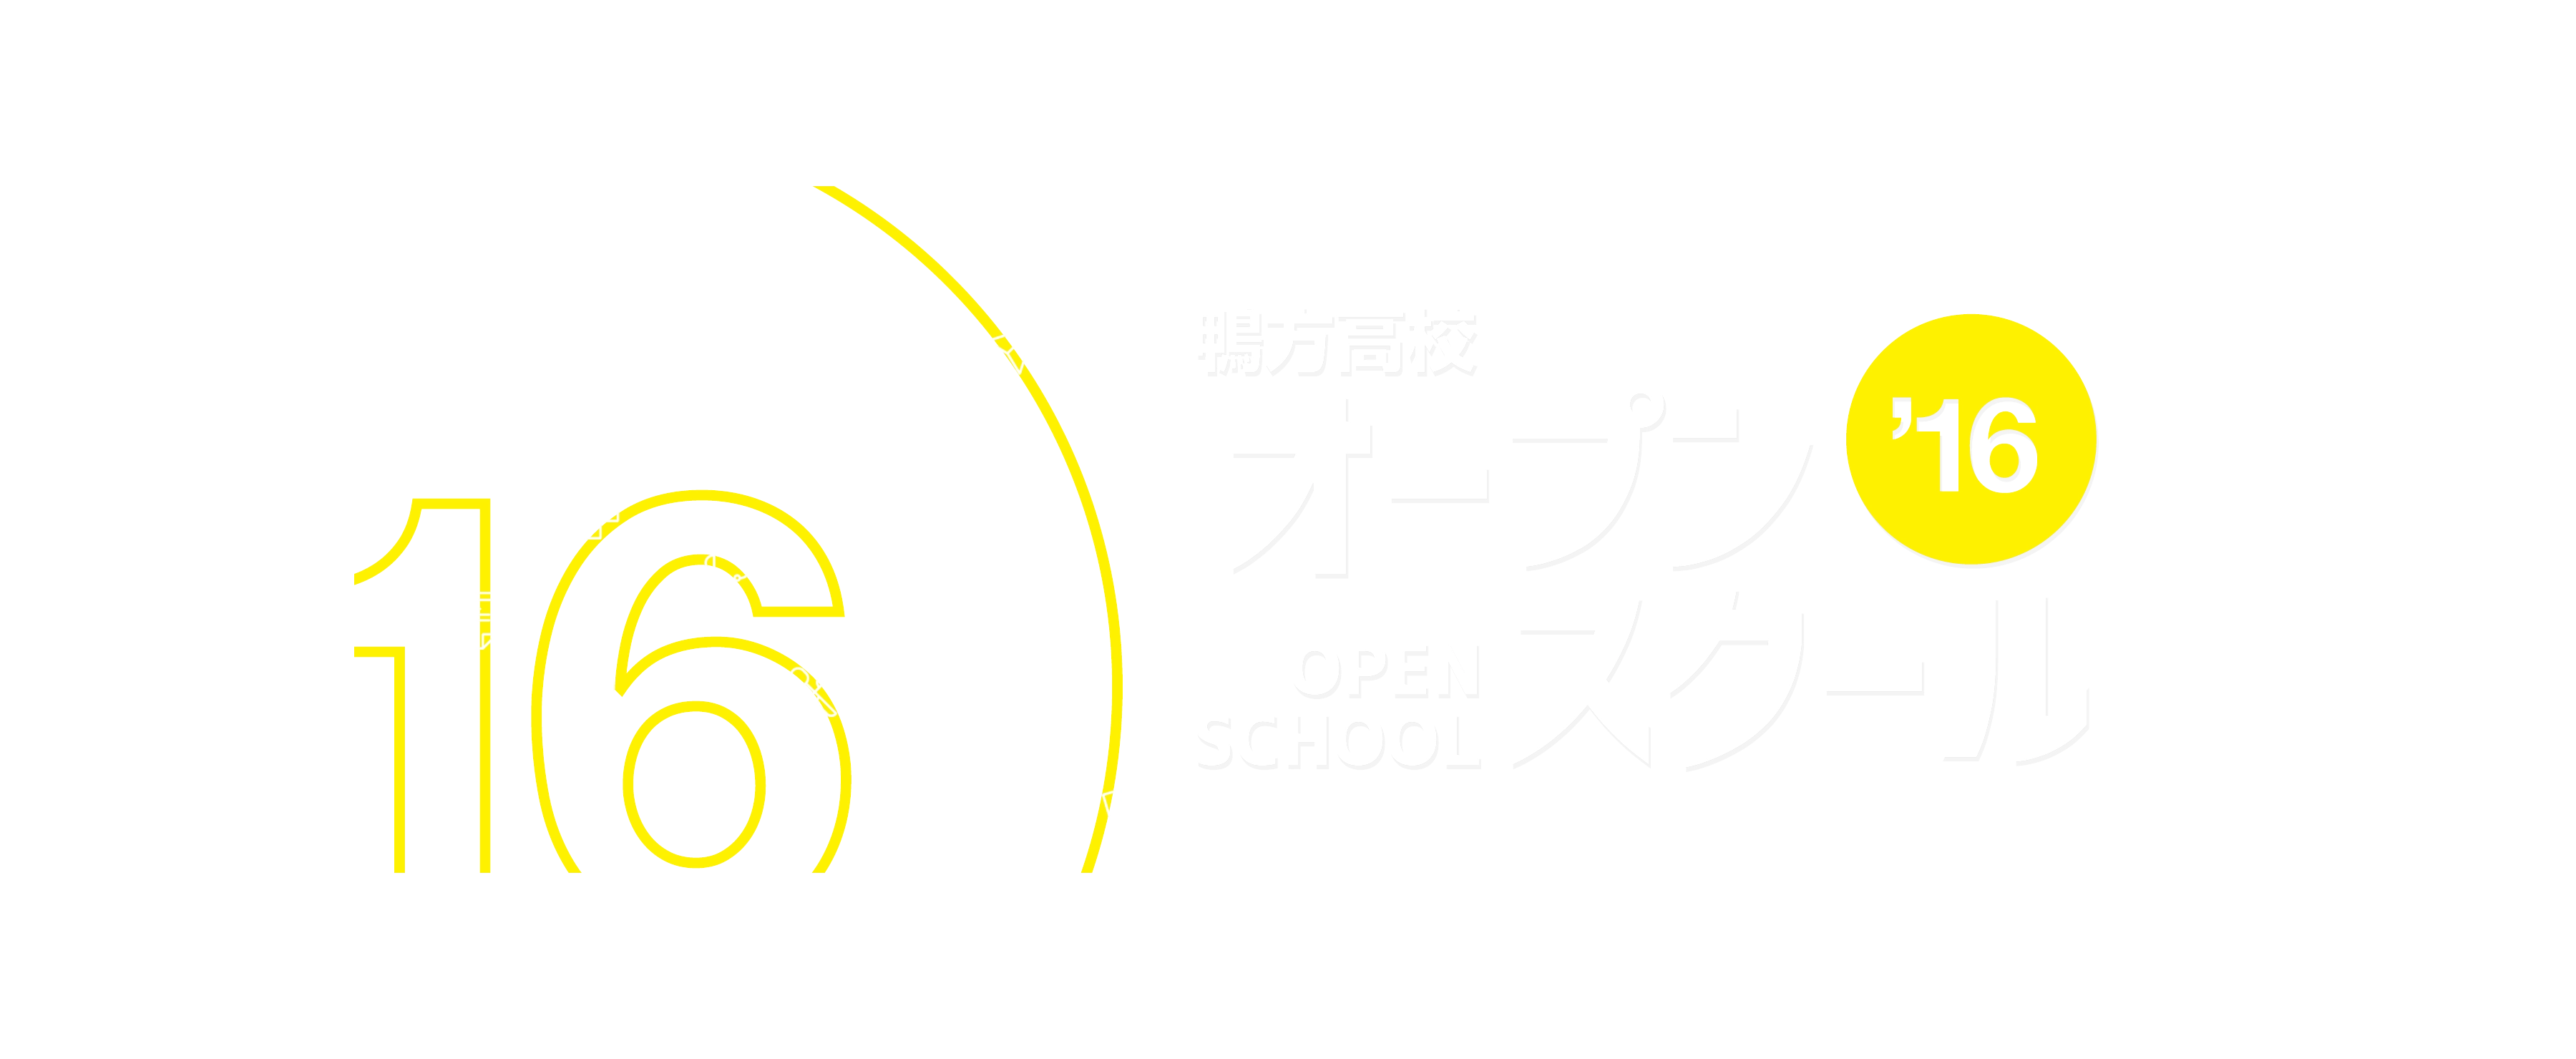 Kamogata High School Website - Open School Banner